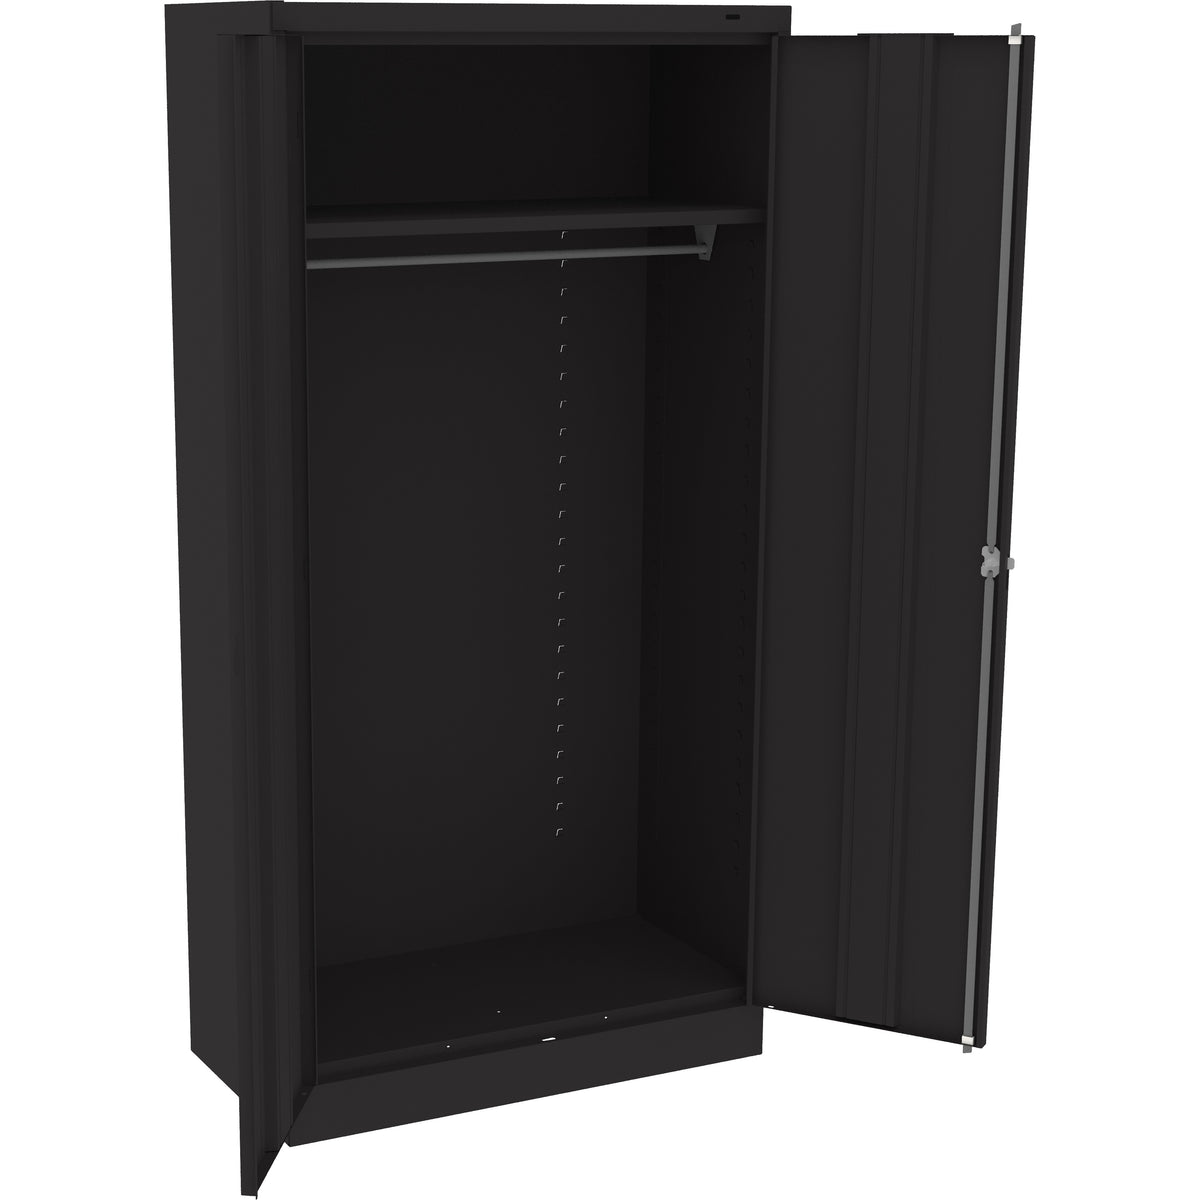 Tennsco 72" High Standard Wardrobe Cabinet - Assembled, 7114